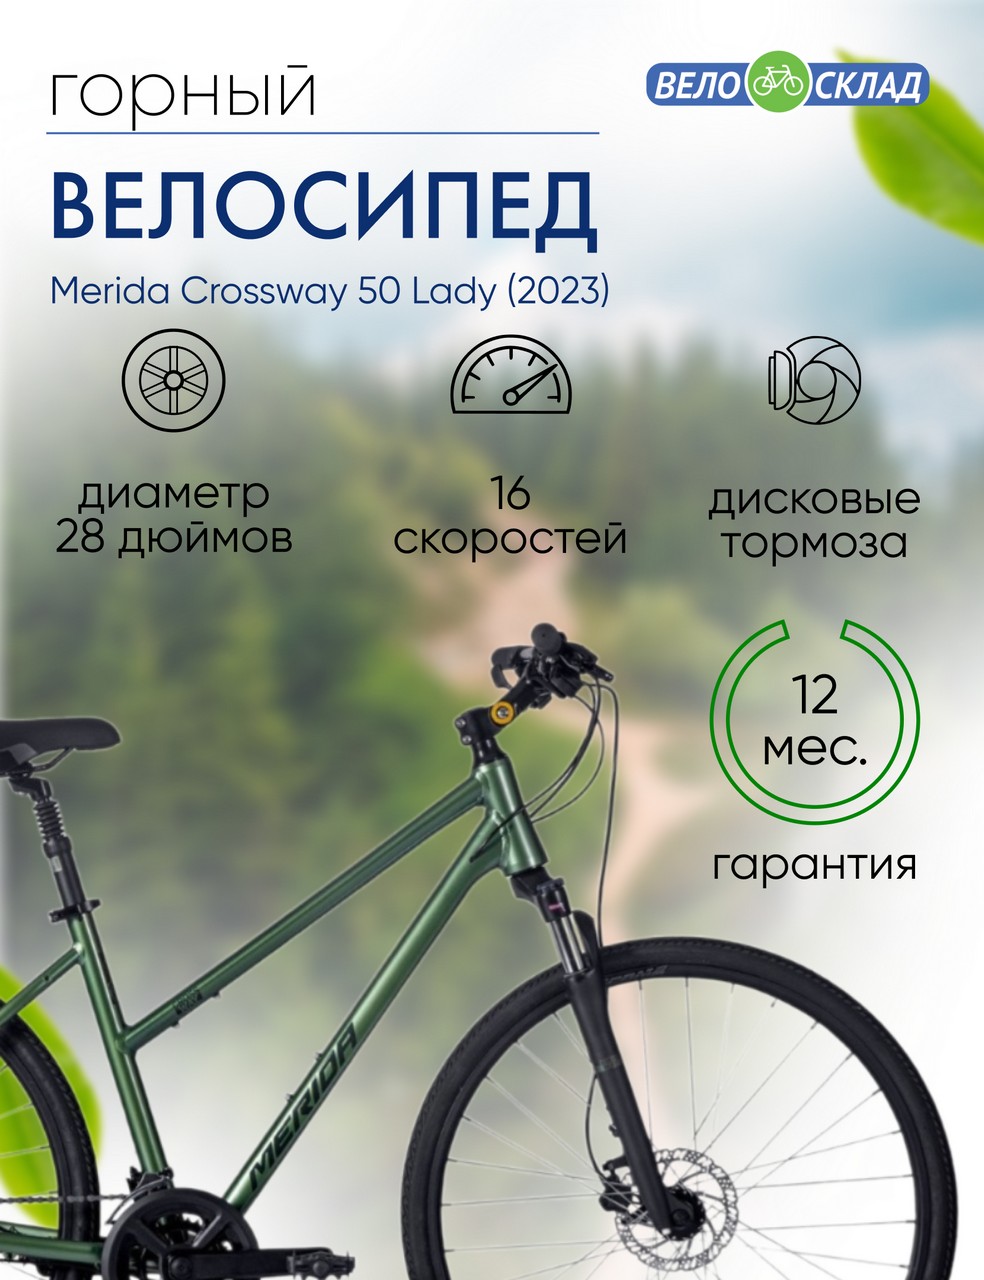 Женский велосипед Merida Crossway 50 Lady, год 2023, цвет Зеленый-Зеленый, ростовка 20